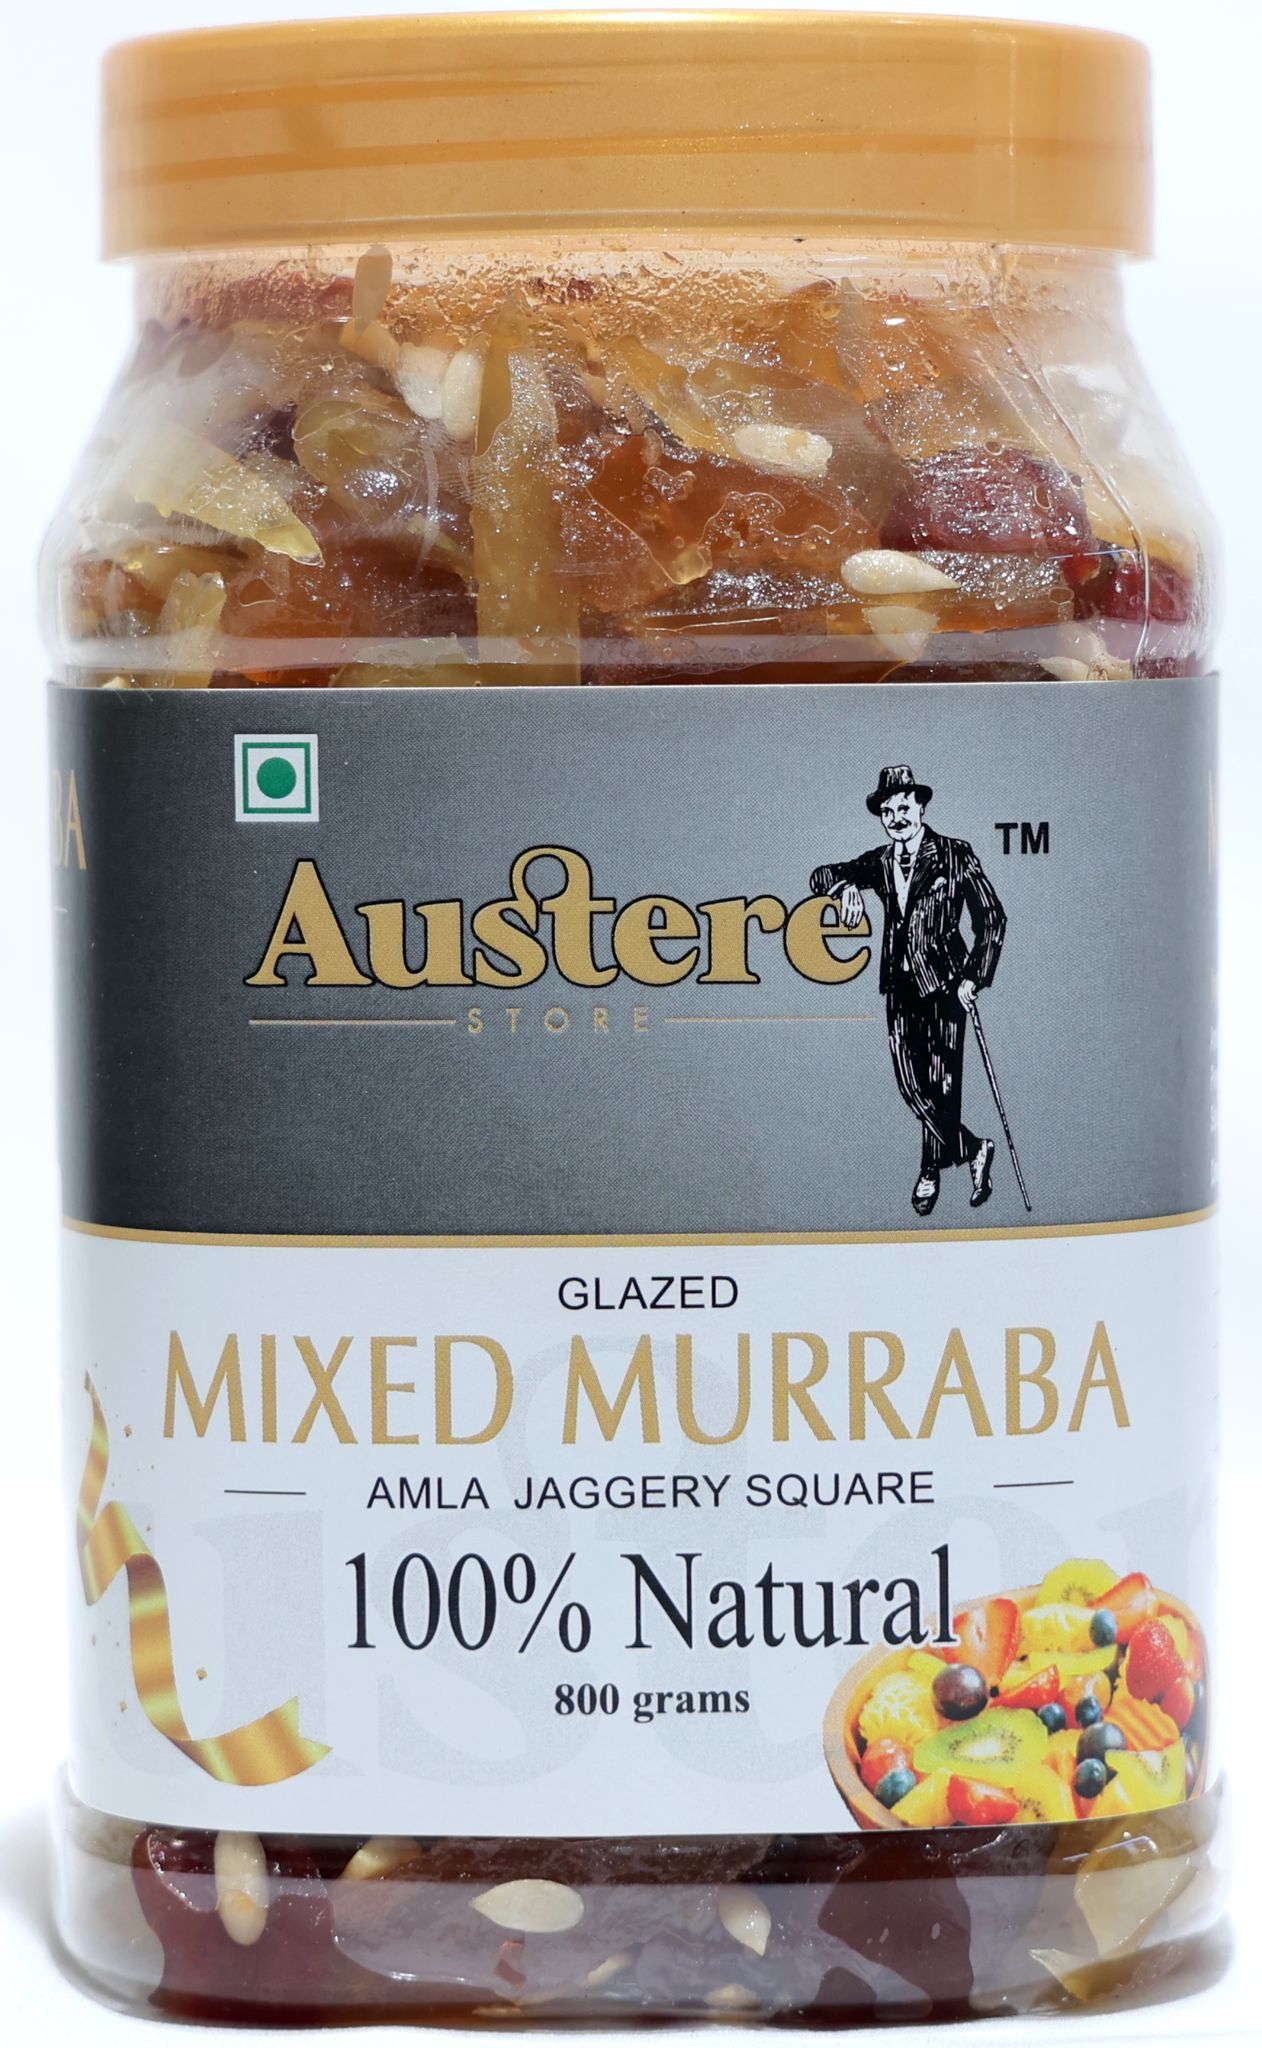 MIXED MURABBA ( PACK OF FRUITS)